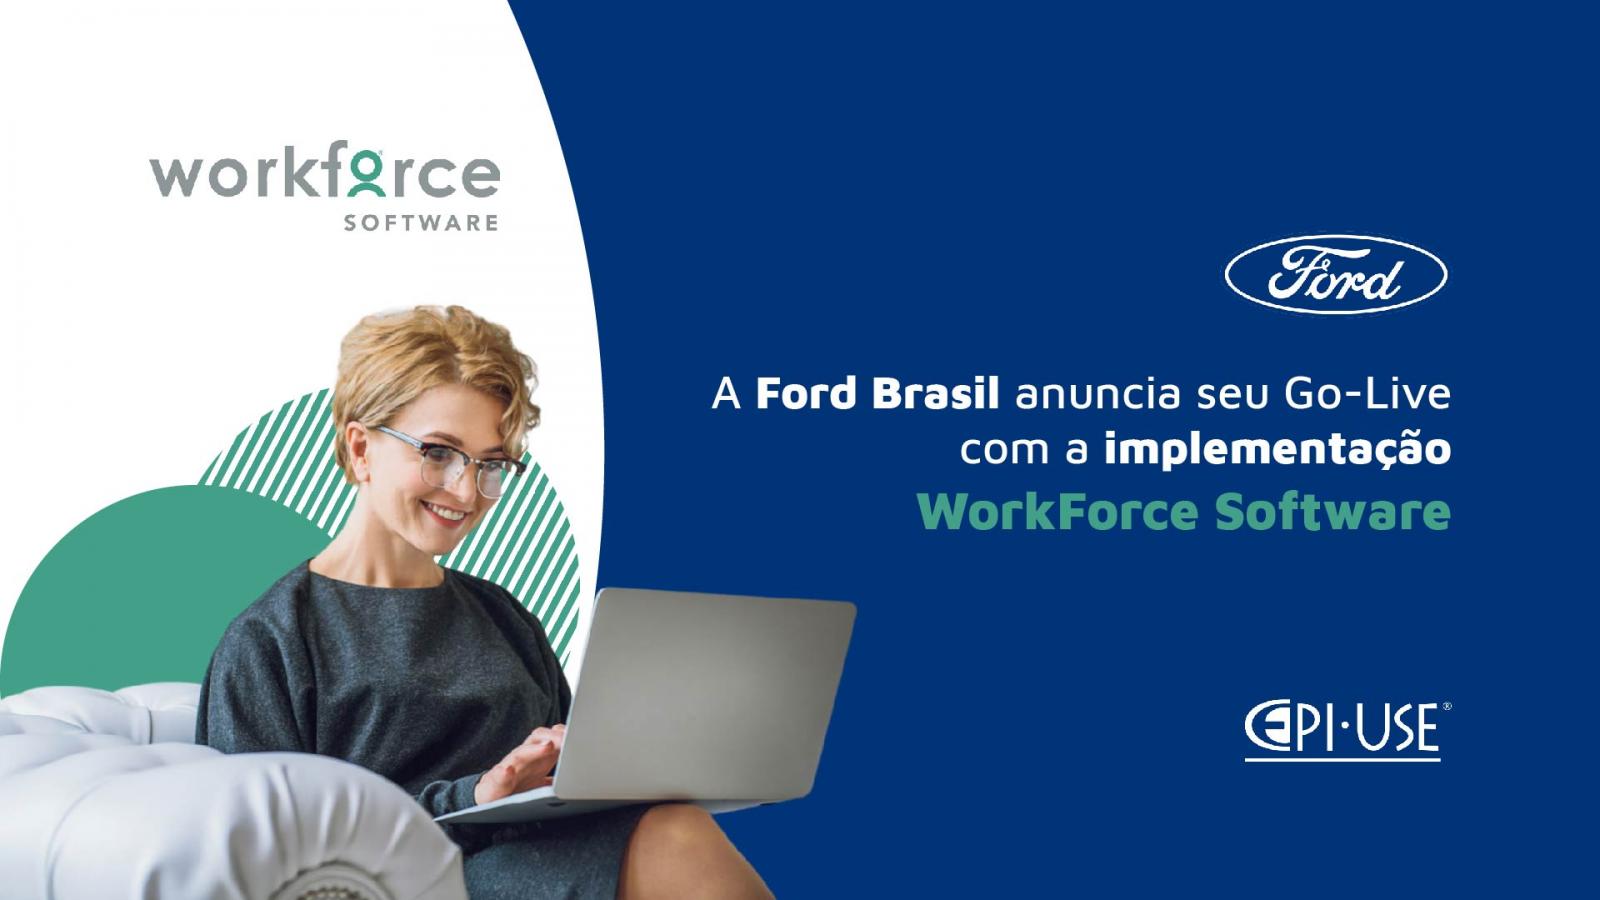 Go-Live Ford Brasil da solução WorkForce Software